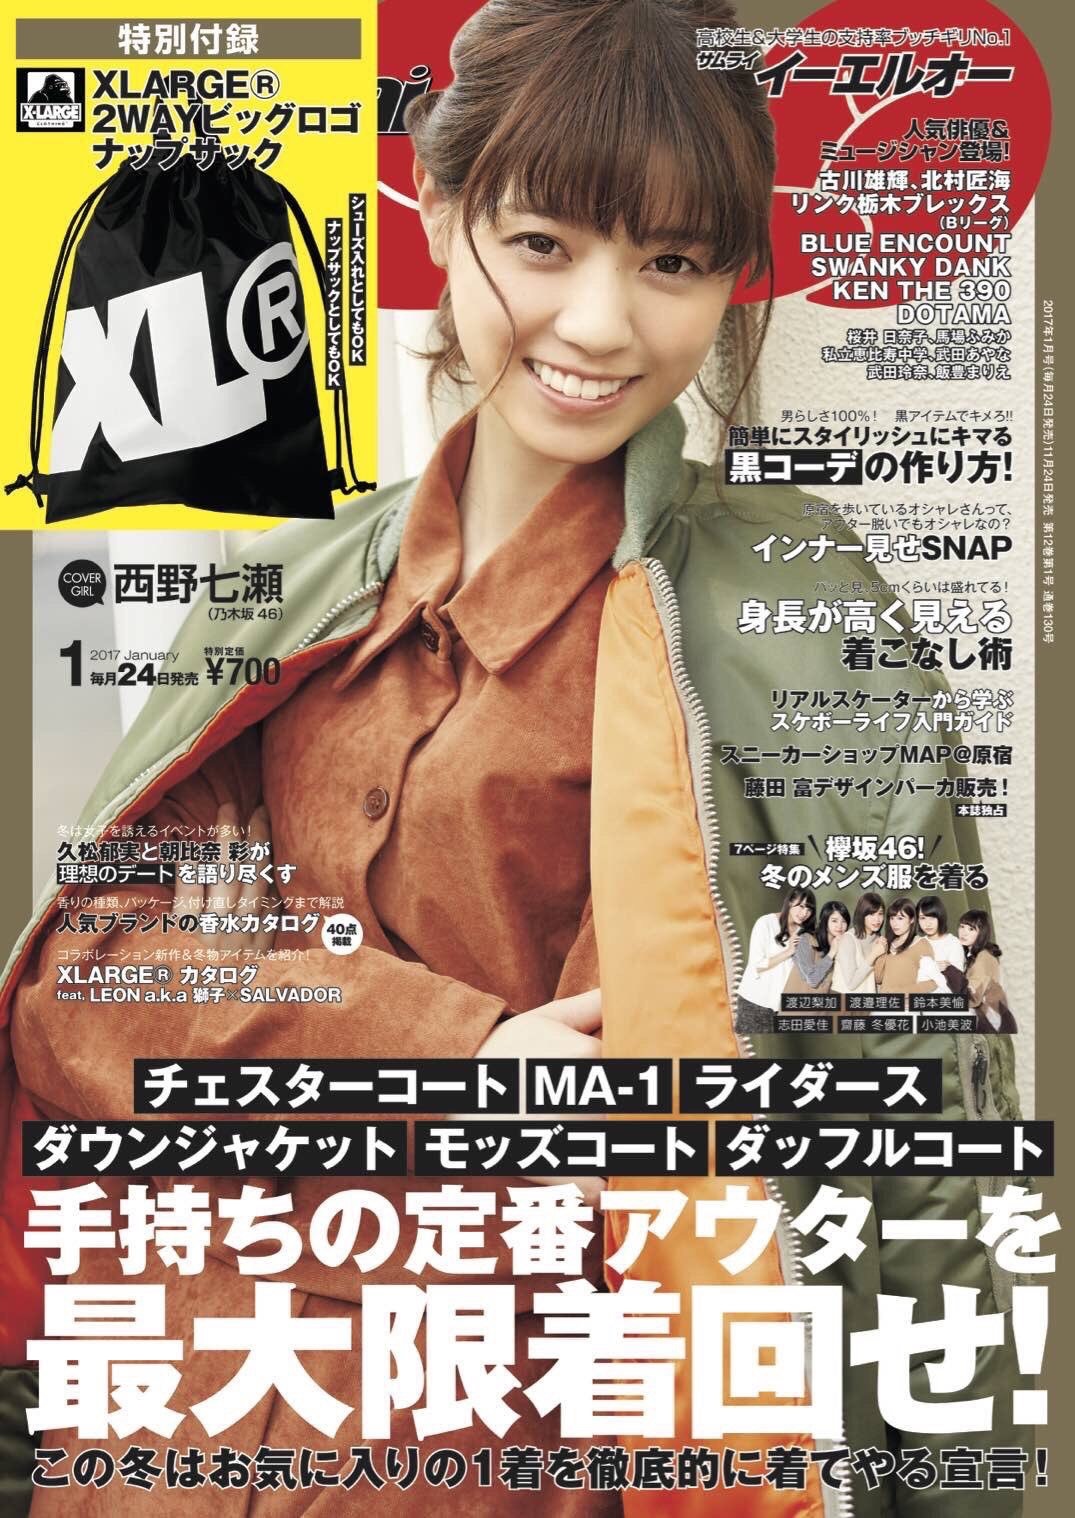 【Magazine】11/24（木）発売号「Samurai ELO」 | KEN THE 390 Official